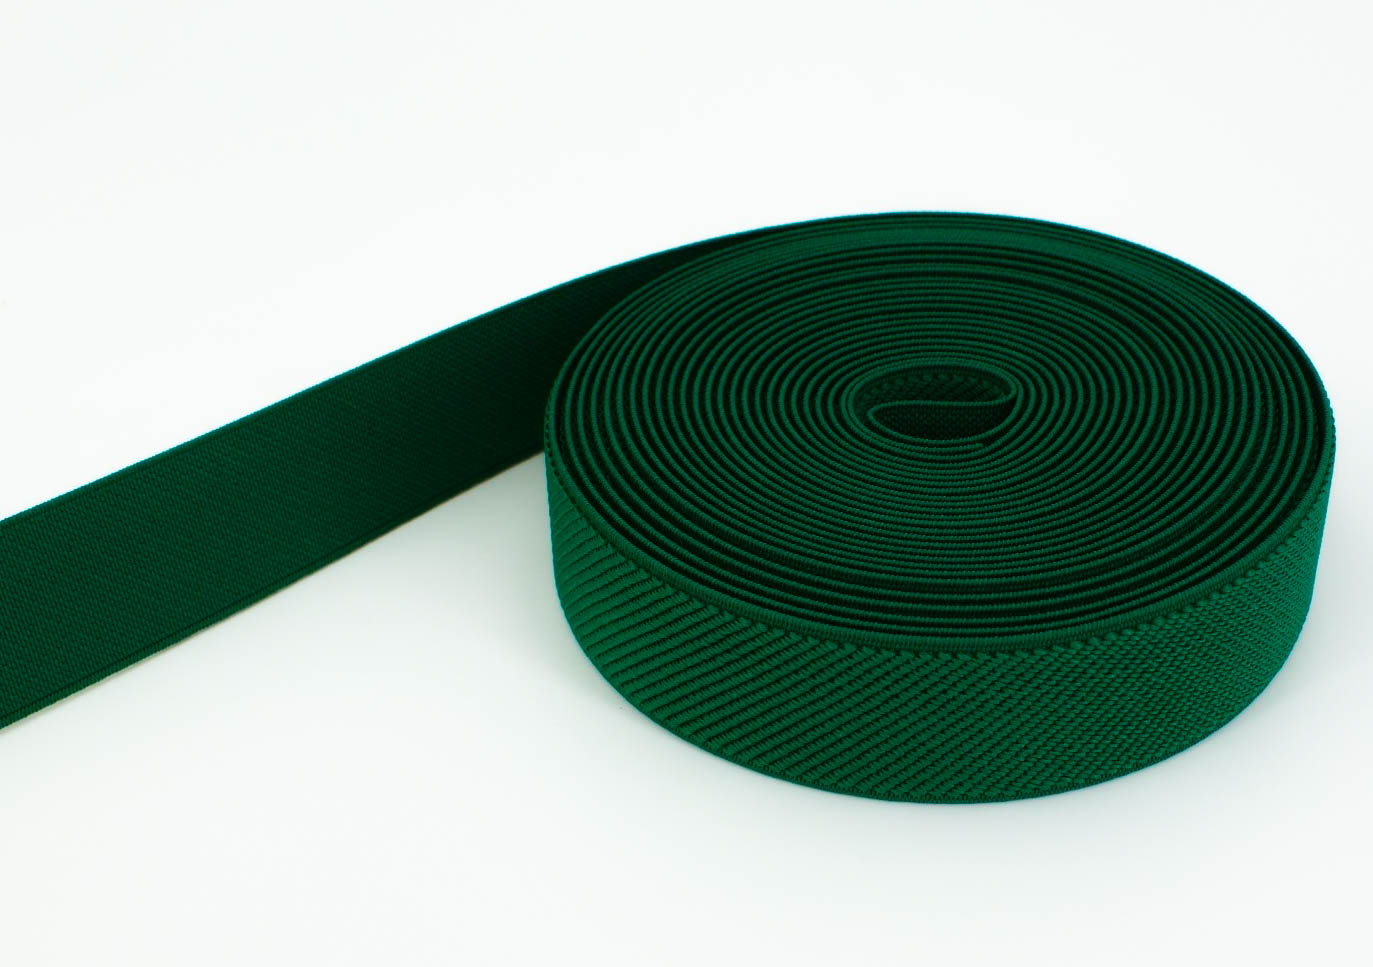 50m Rolle Gummiband - Farbe: dunkelgrün - 25mm breit.